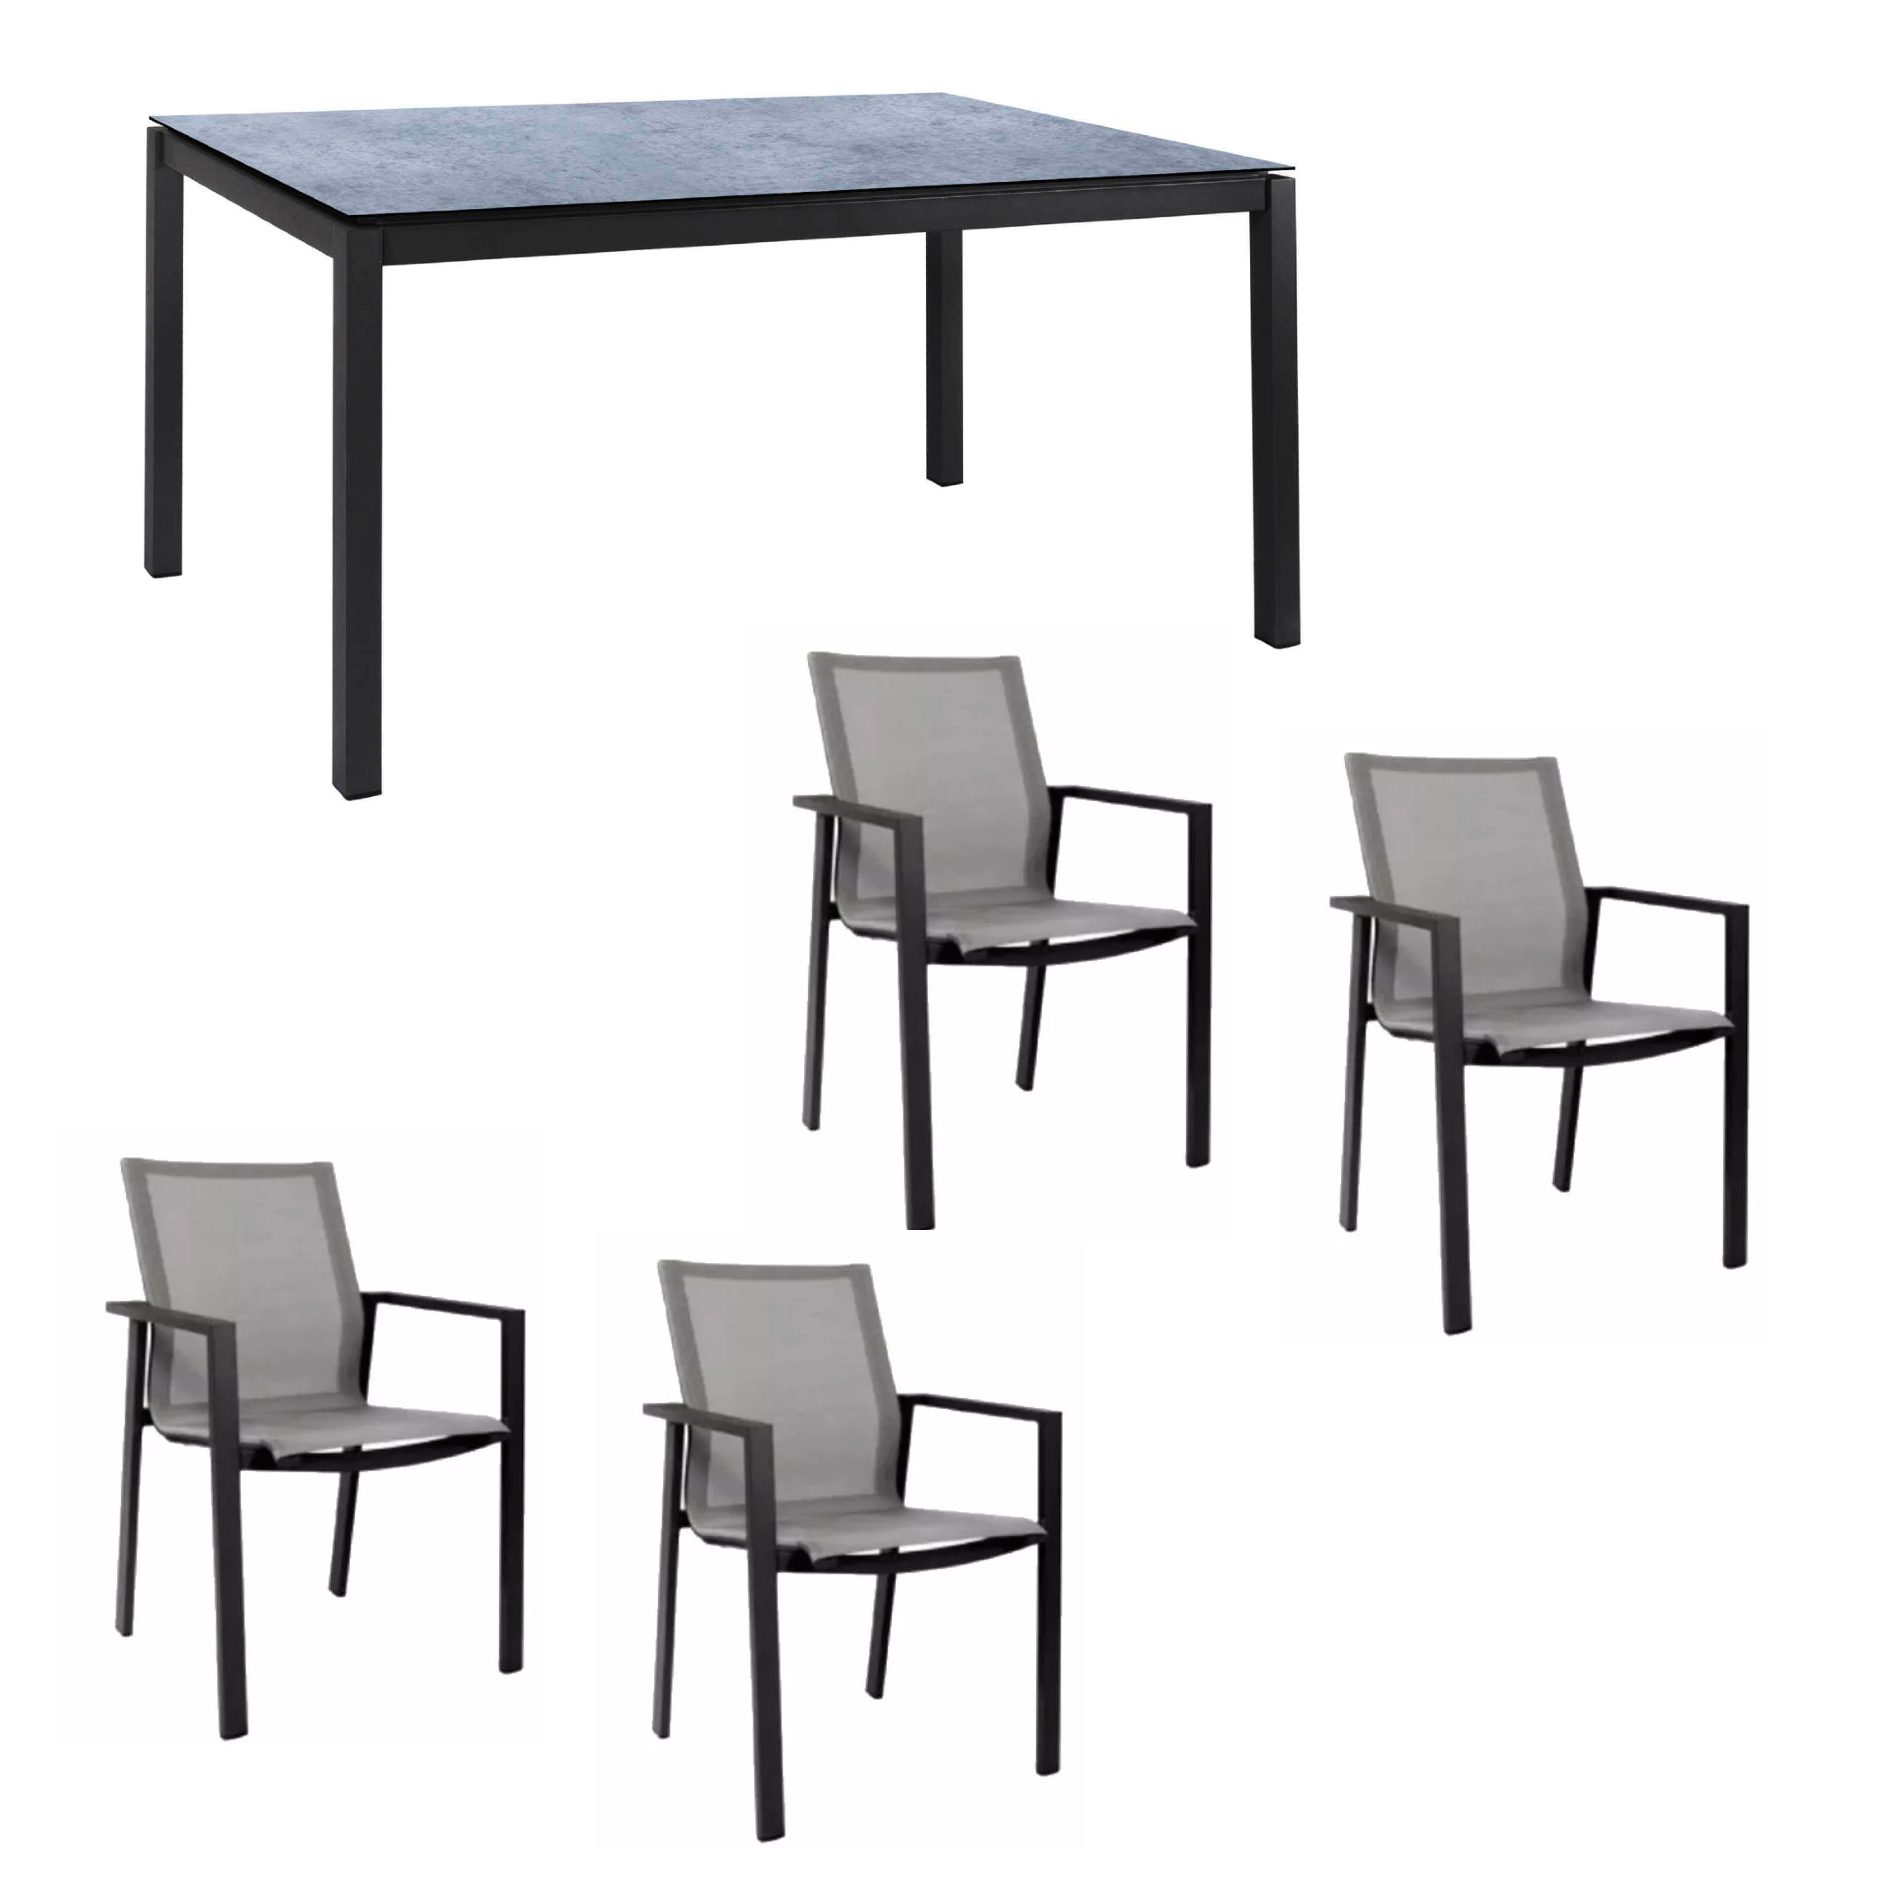 Jati&Kebon Gartenmöbel-Set mit Stuhl "Beja" und Tisch "Lugo", Alu anthrazit, Tischplatte HPL Zementgrau